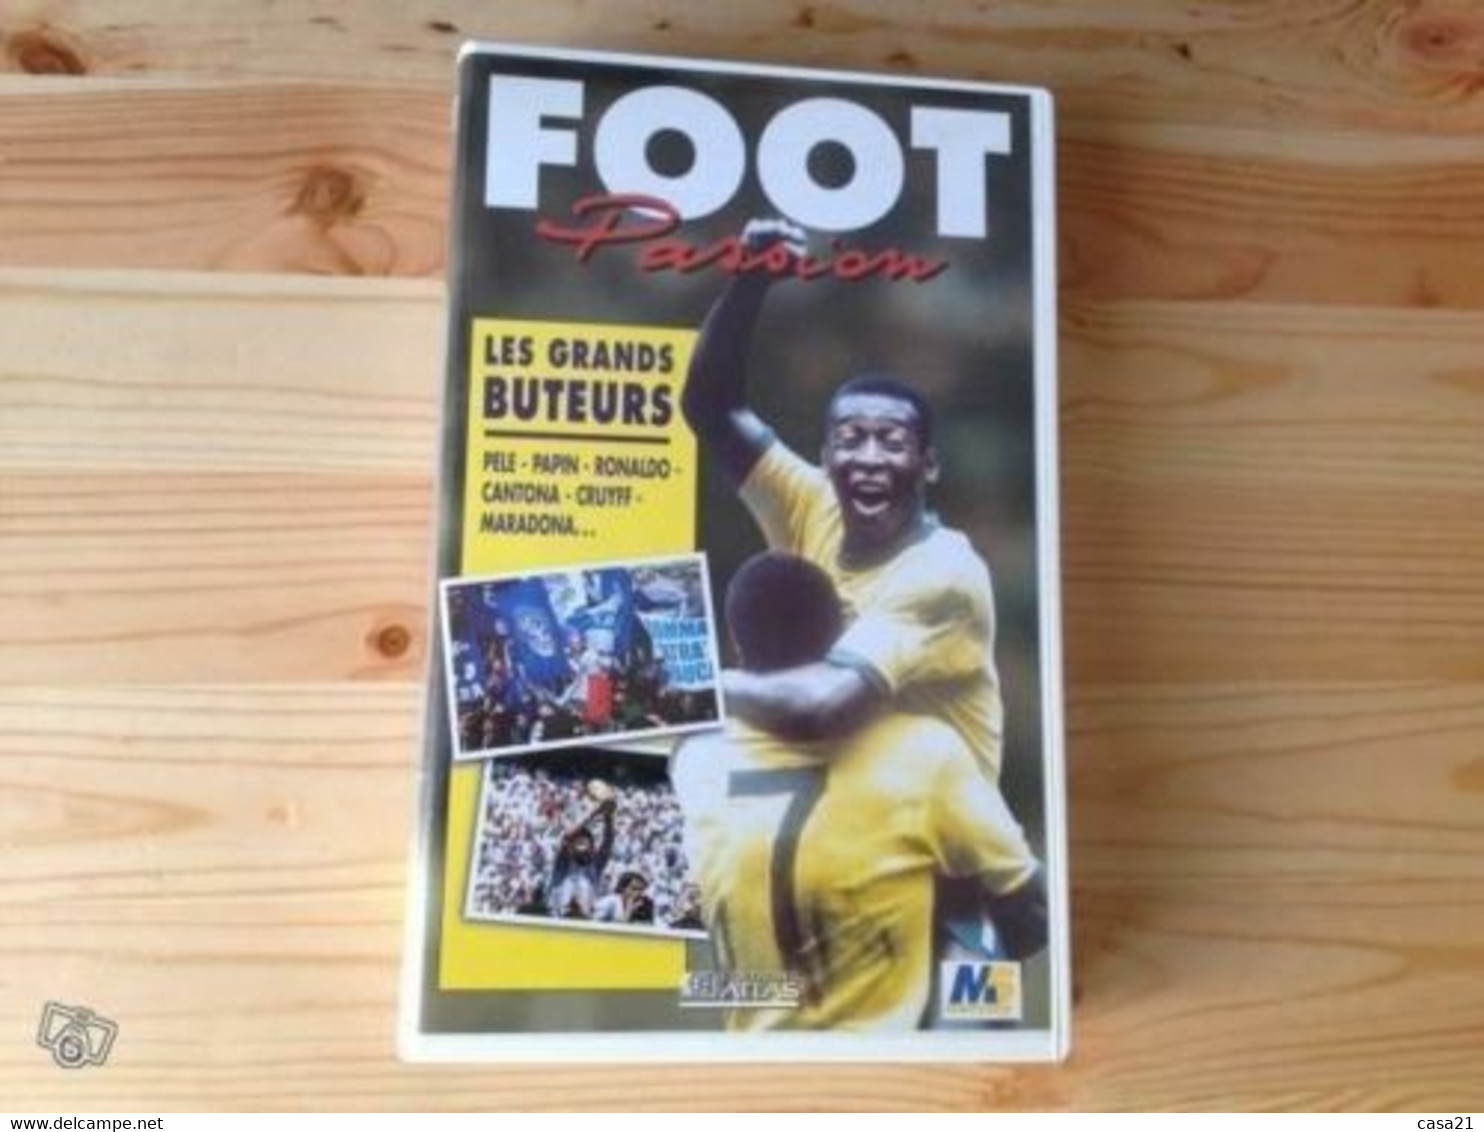 Foot Passion - Les Grands Buteurs (VHS) - Deporte